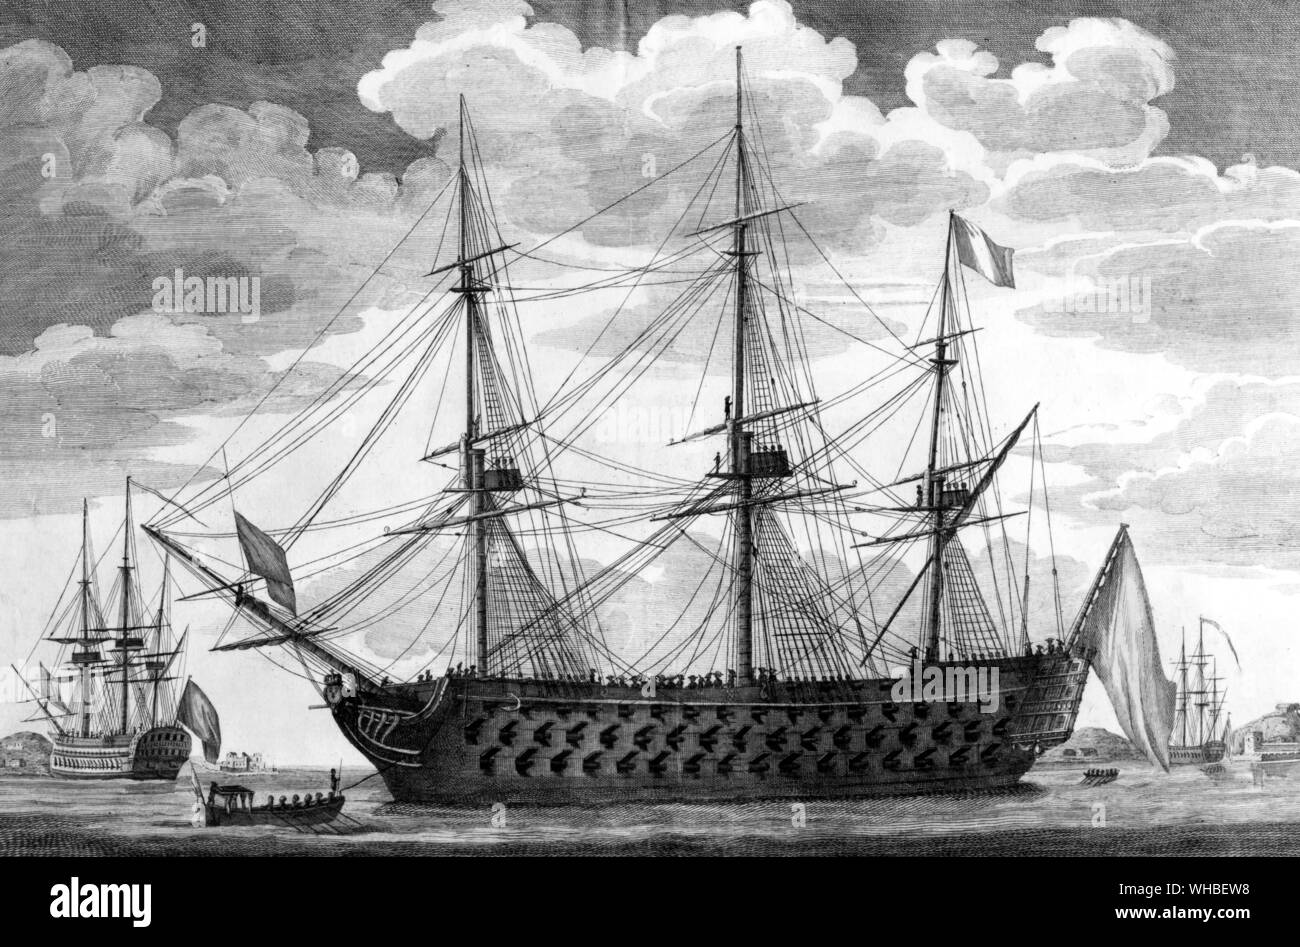 Le commerce de Marseille - Veifseau Francaise 118 lattine. - Lanciato nel 1793 - disegno al tratto a colori da Emerico - l'Océan-tipo di navi di linea erano una serie di 16 primo tasso di 118-gun navi di linea della marina francese, progettata dall'ingegnere Jacques-Noël Sané. Quindici sono state espletate a partire dal 1788, con l'ultima entrata in servizio nel 1854. Il primo della serie è stato il commerce de Marseille.. Il 5.100 ton 118-tipo di pistola è stato il più grande tipo di nave costruita fino ad allora. Fino al 1790 la Gran Bretagna, la più grande della flotta di battaglia delle nazioni, non aveva costruito specialmente grandi corazzate perché la necessità di Foto Stock